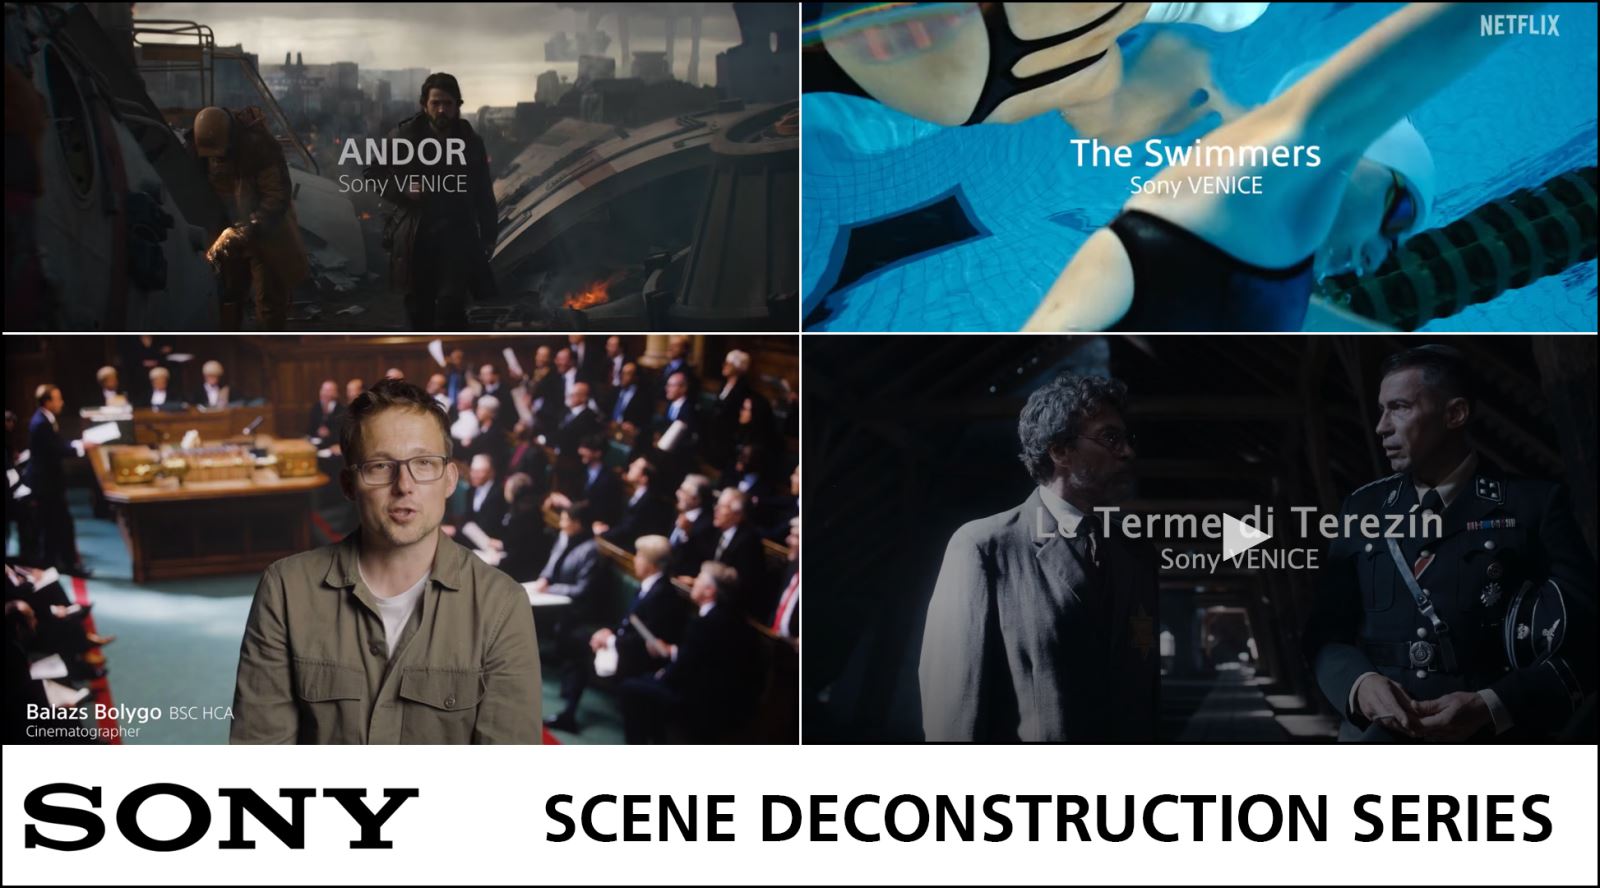 Sony Scene Deconstruction Series